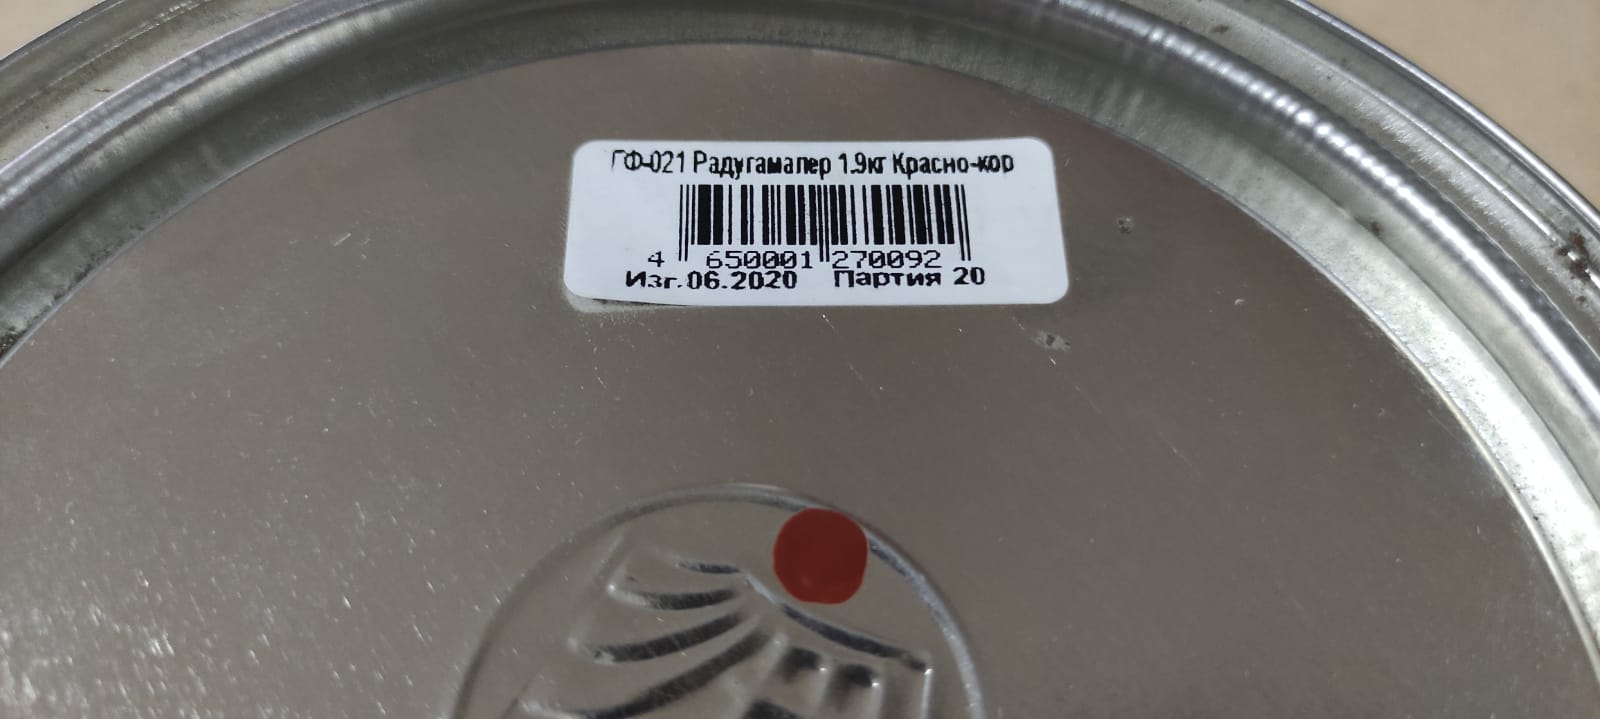 Грунт по металлу ГФ-021 РадугаМалер 1,9 кг (красно-коричневая)